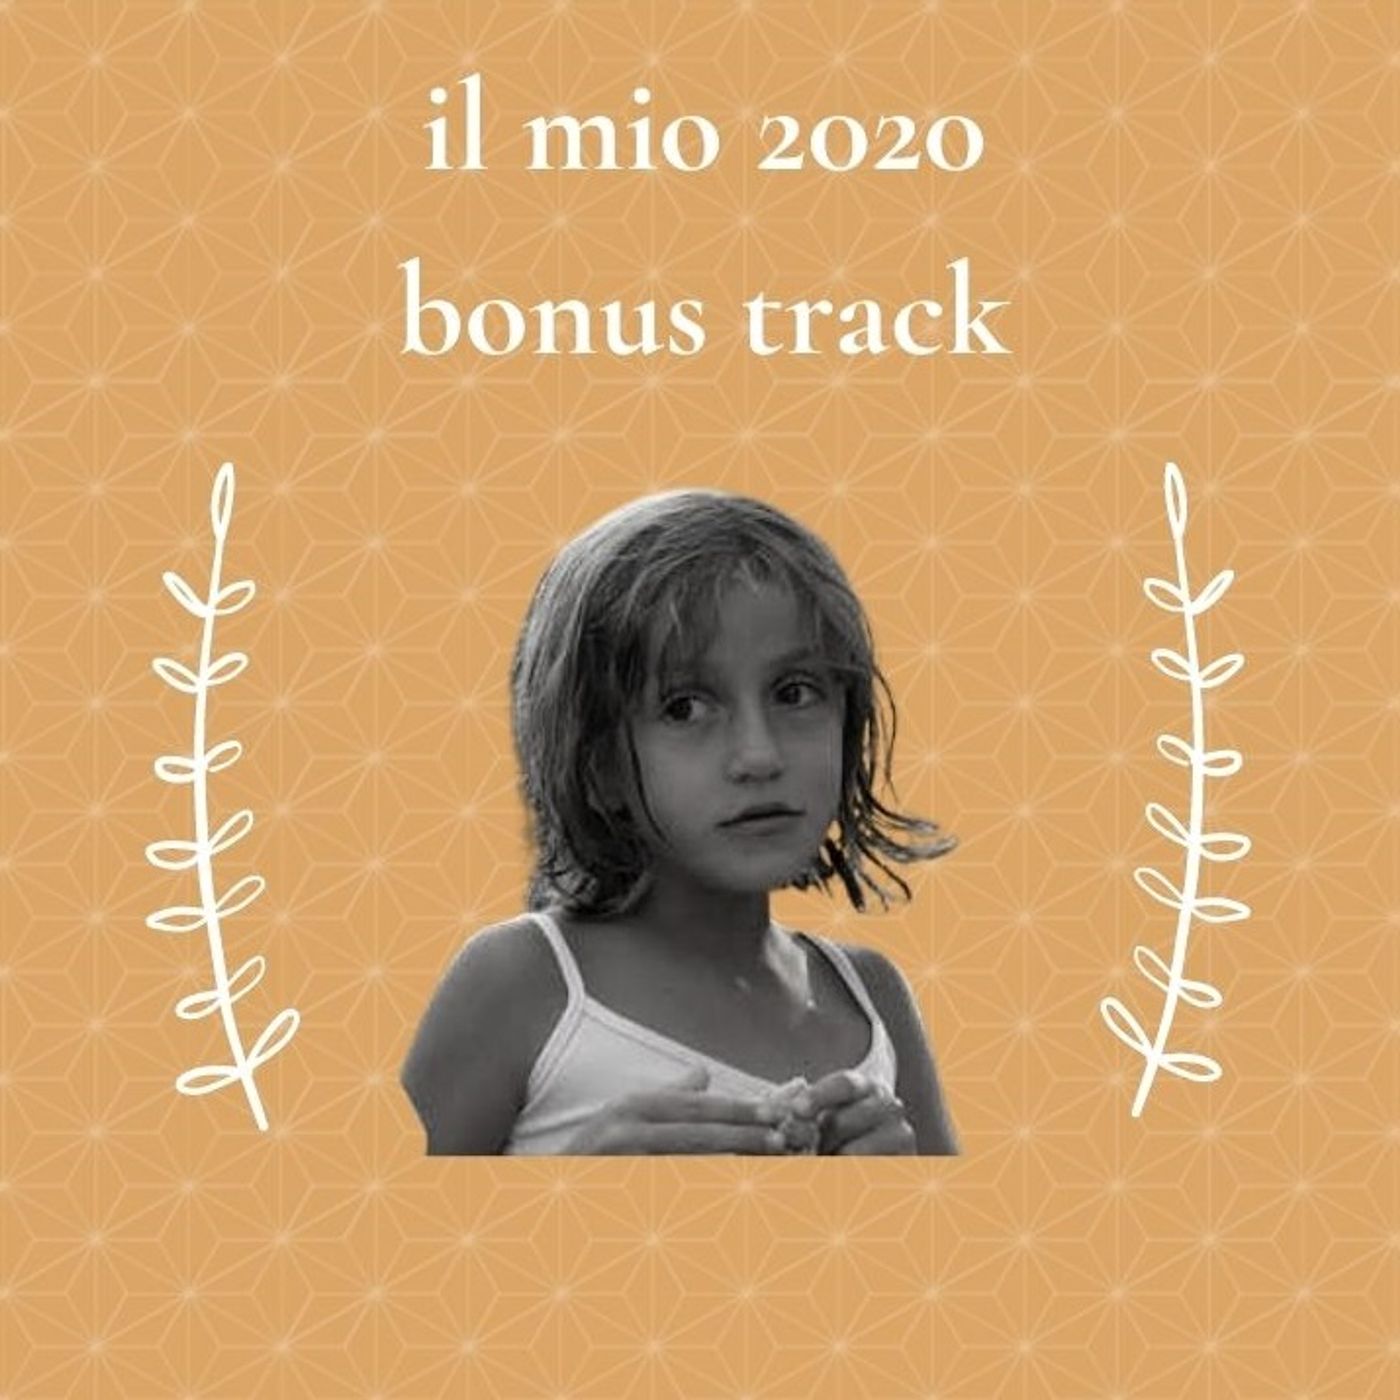 Il mio 2020 - Comequandofuoripiove bonus track